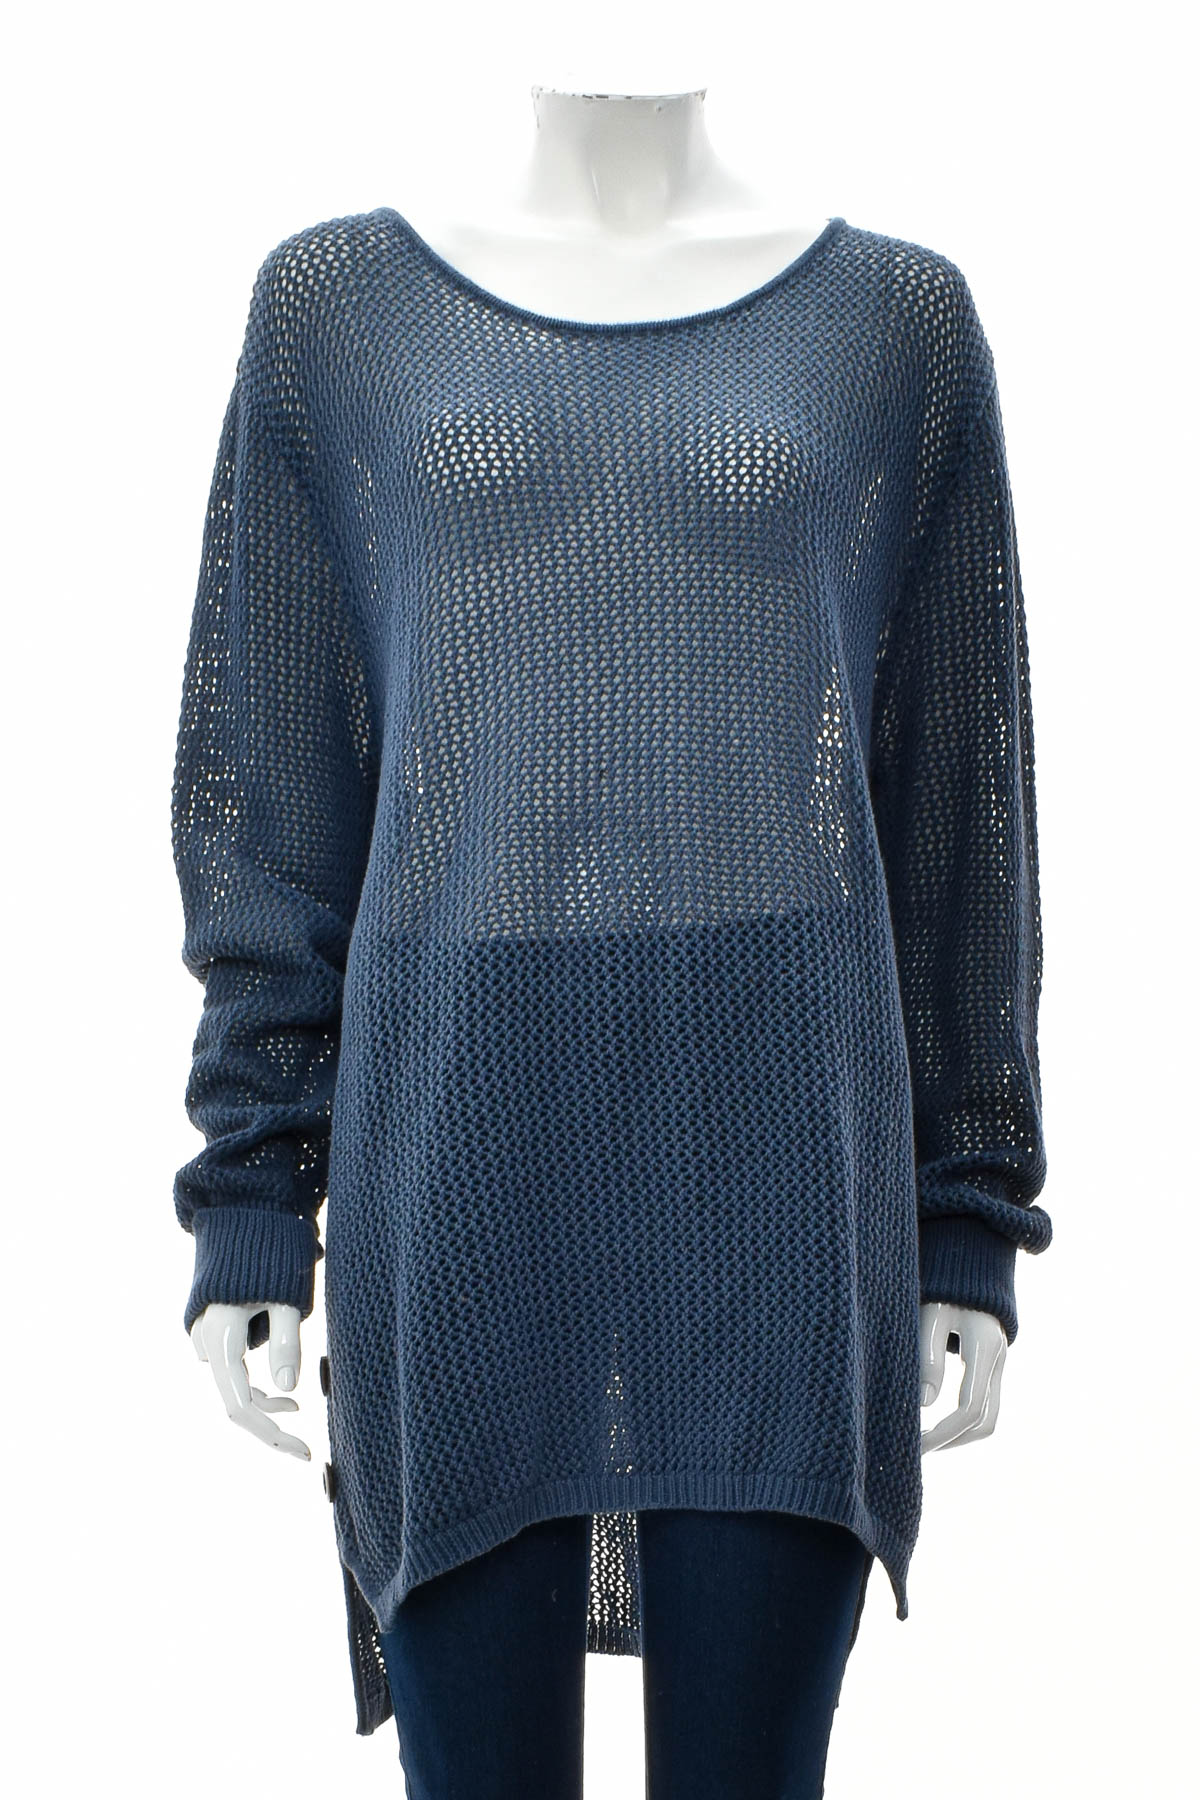 Women's sweater - Simply Noelle - 0